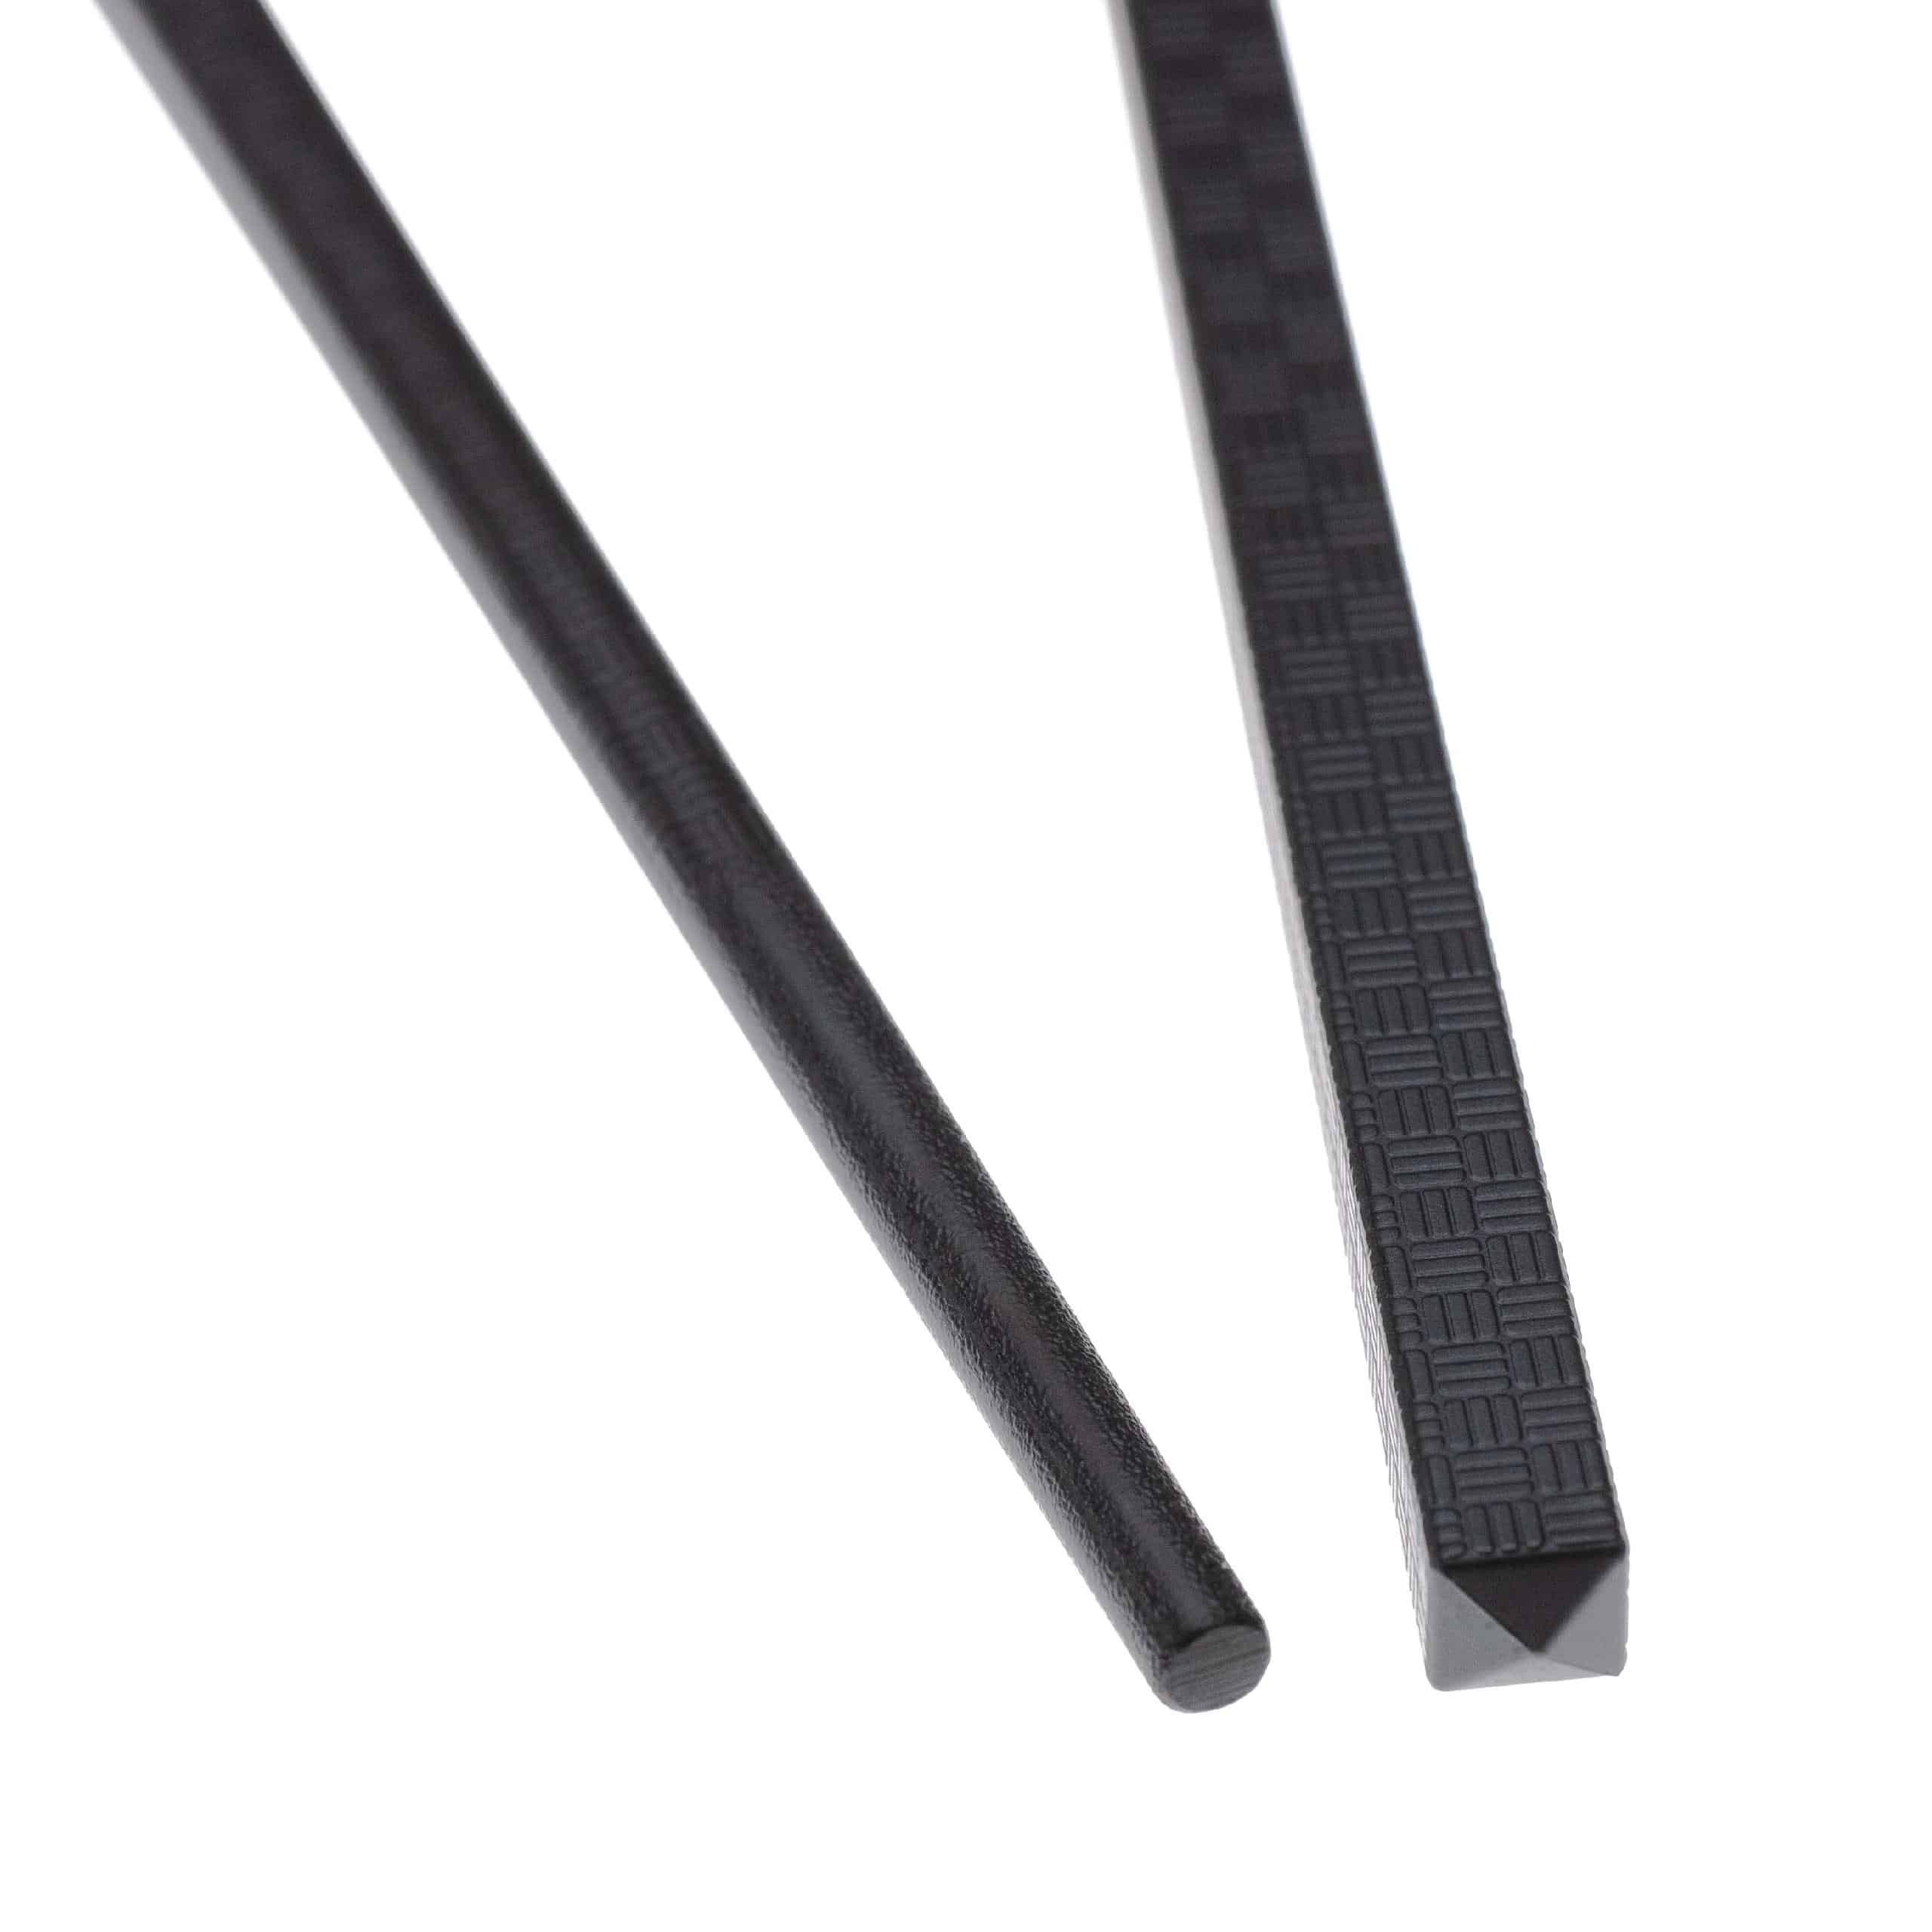 Chopstick Sets (10 Pair) - Plastic, black, 27 cm long, Reusable